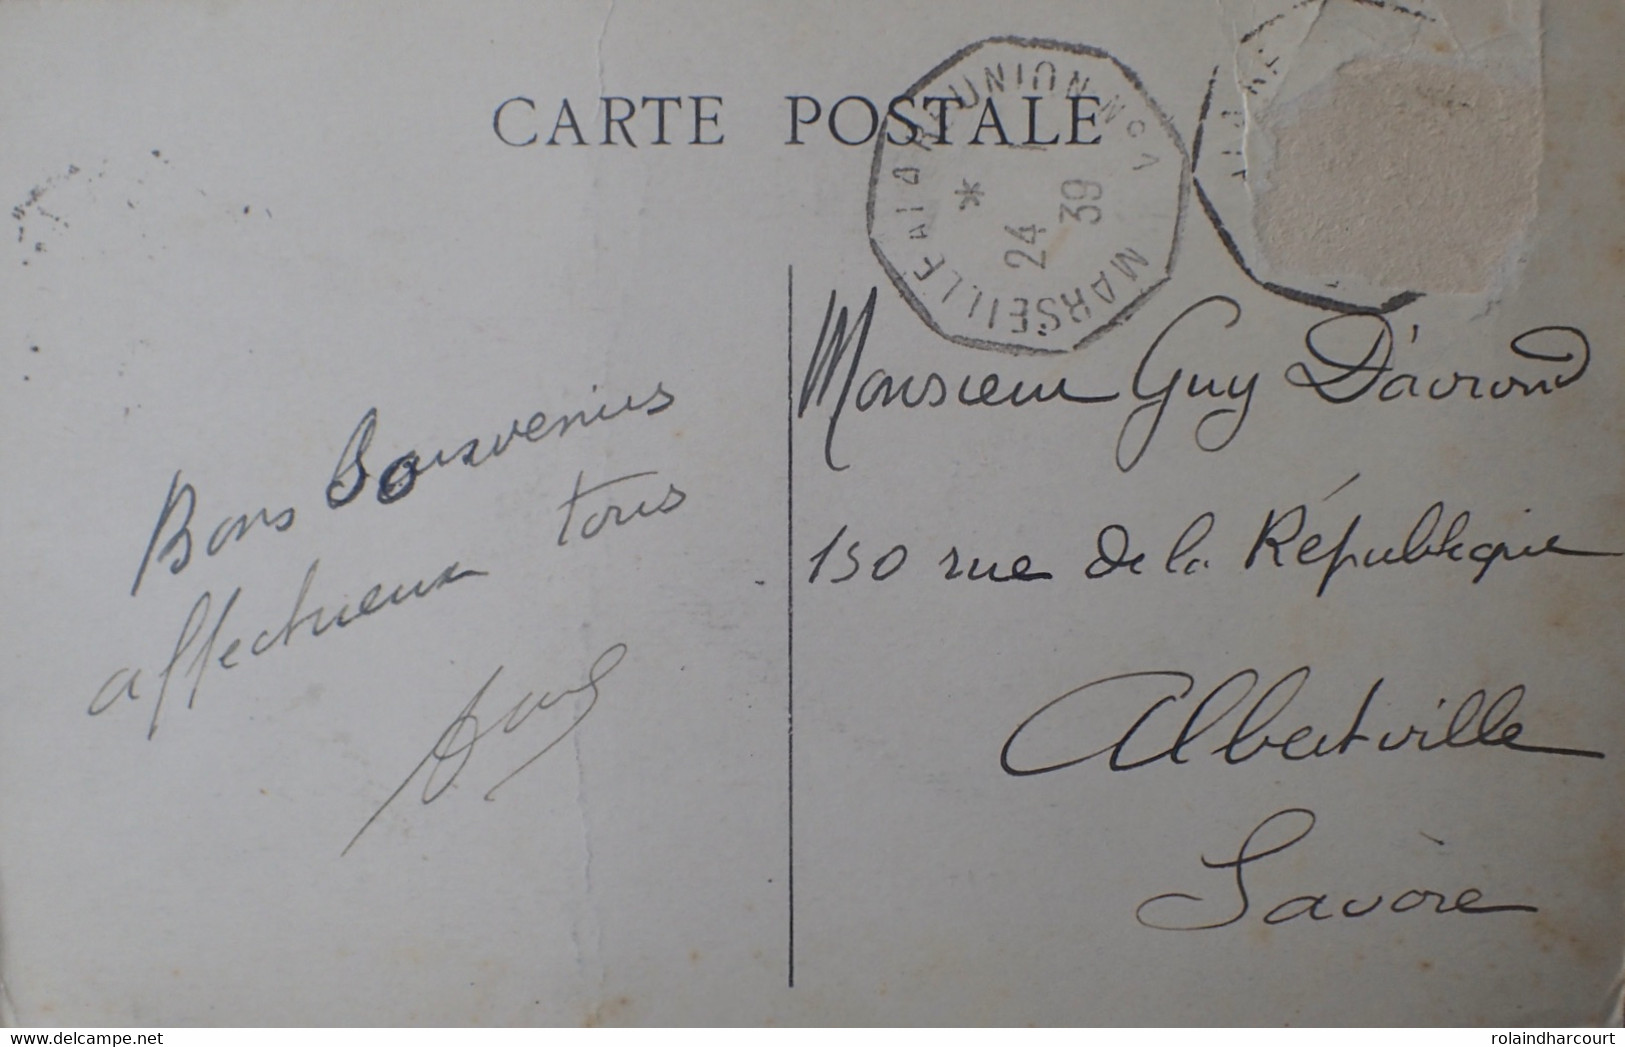 A415 - POSTE MARITIME - ✉️ DJIBOUTI à LE POULIQUEN - Lettre postée à bord de PAQUEBOT " LECONTE DE L'ISLE "